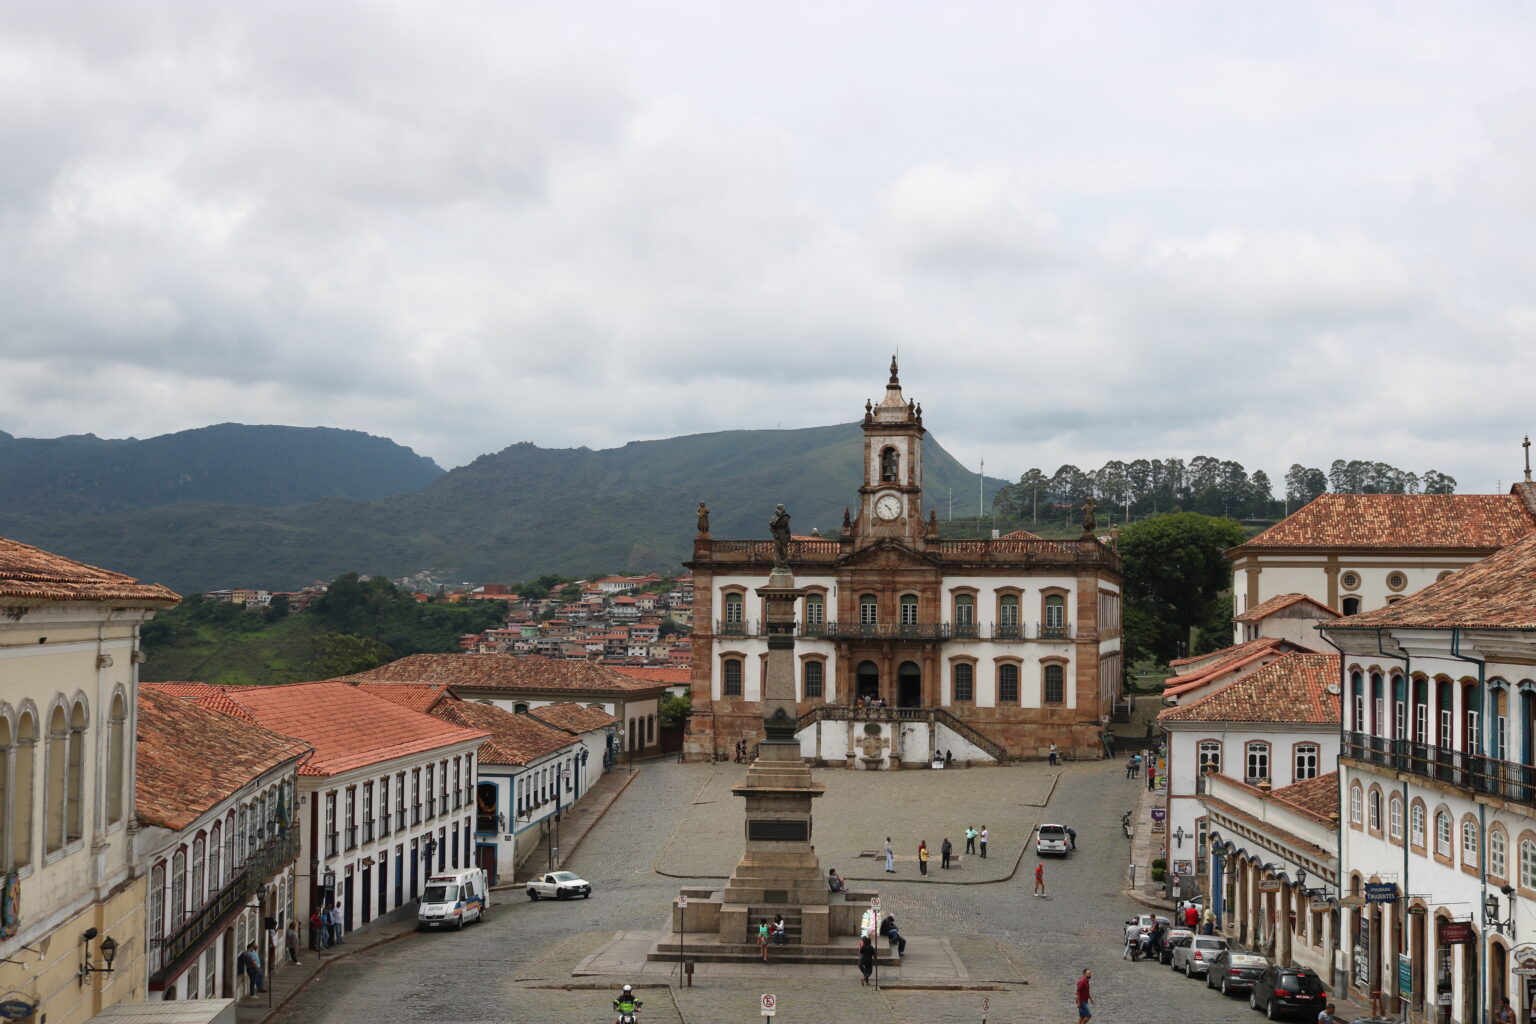 Evento 'Diferentão 2', de Dilsinho, enfrenta desafios com autorizações e segurança em Ouro Preto